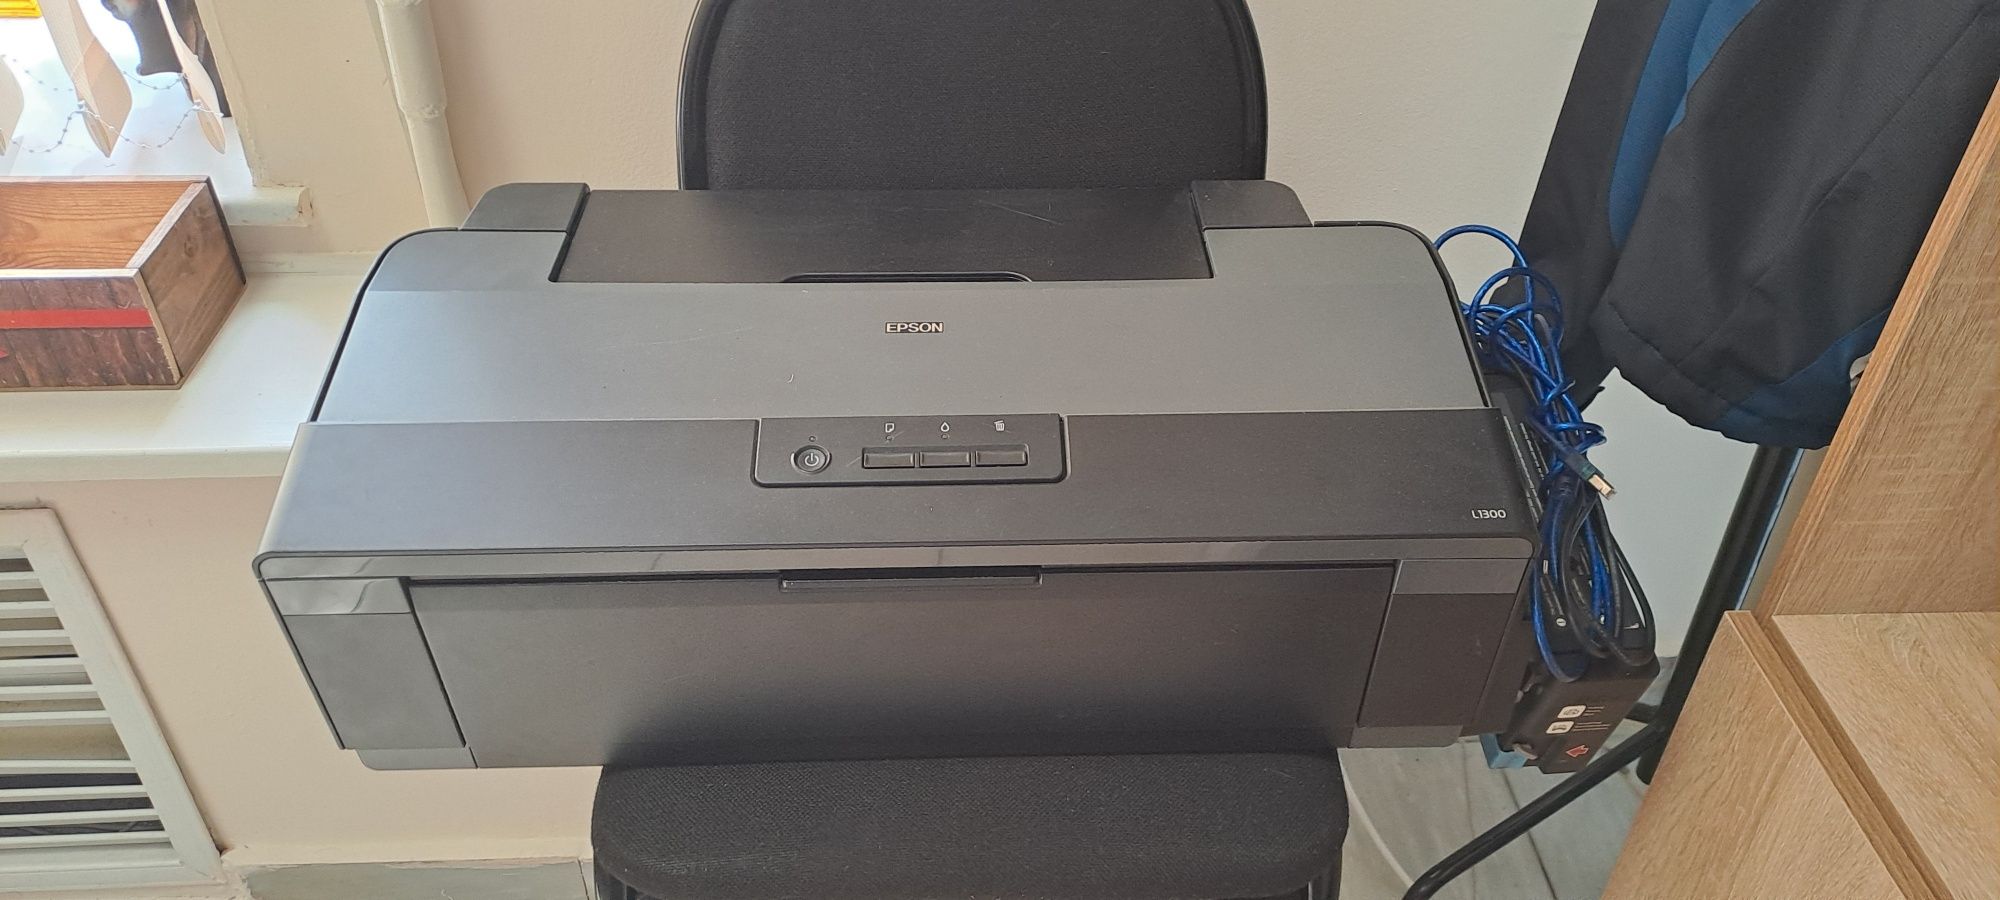 Струйным принтером с СНПЧ Epson l1300